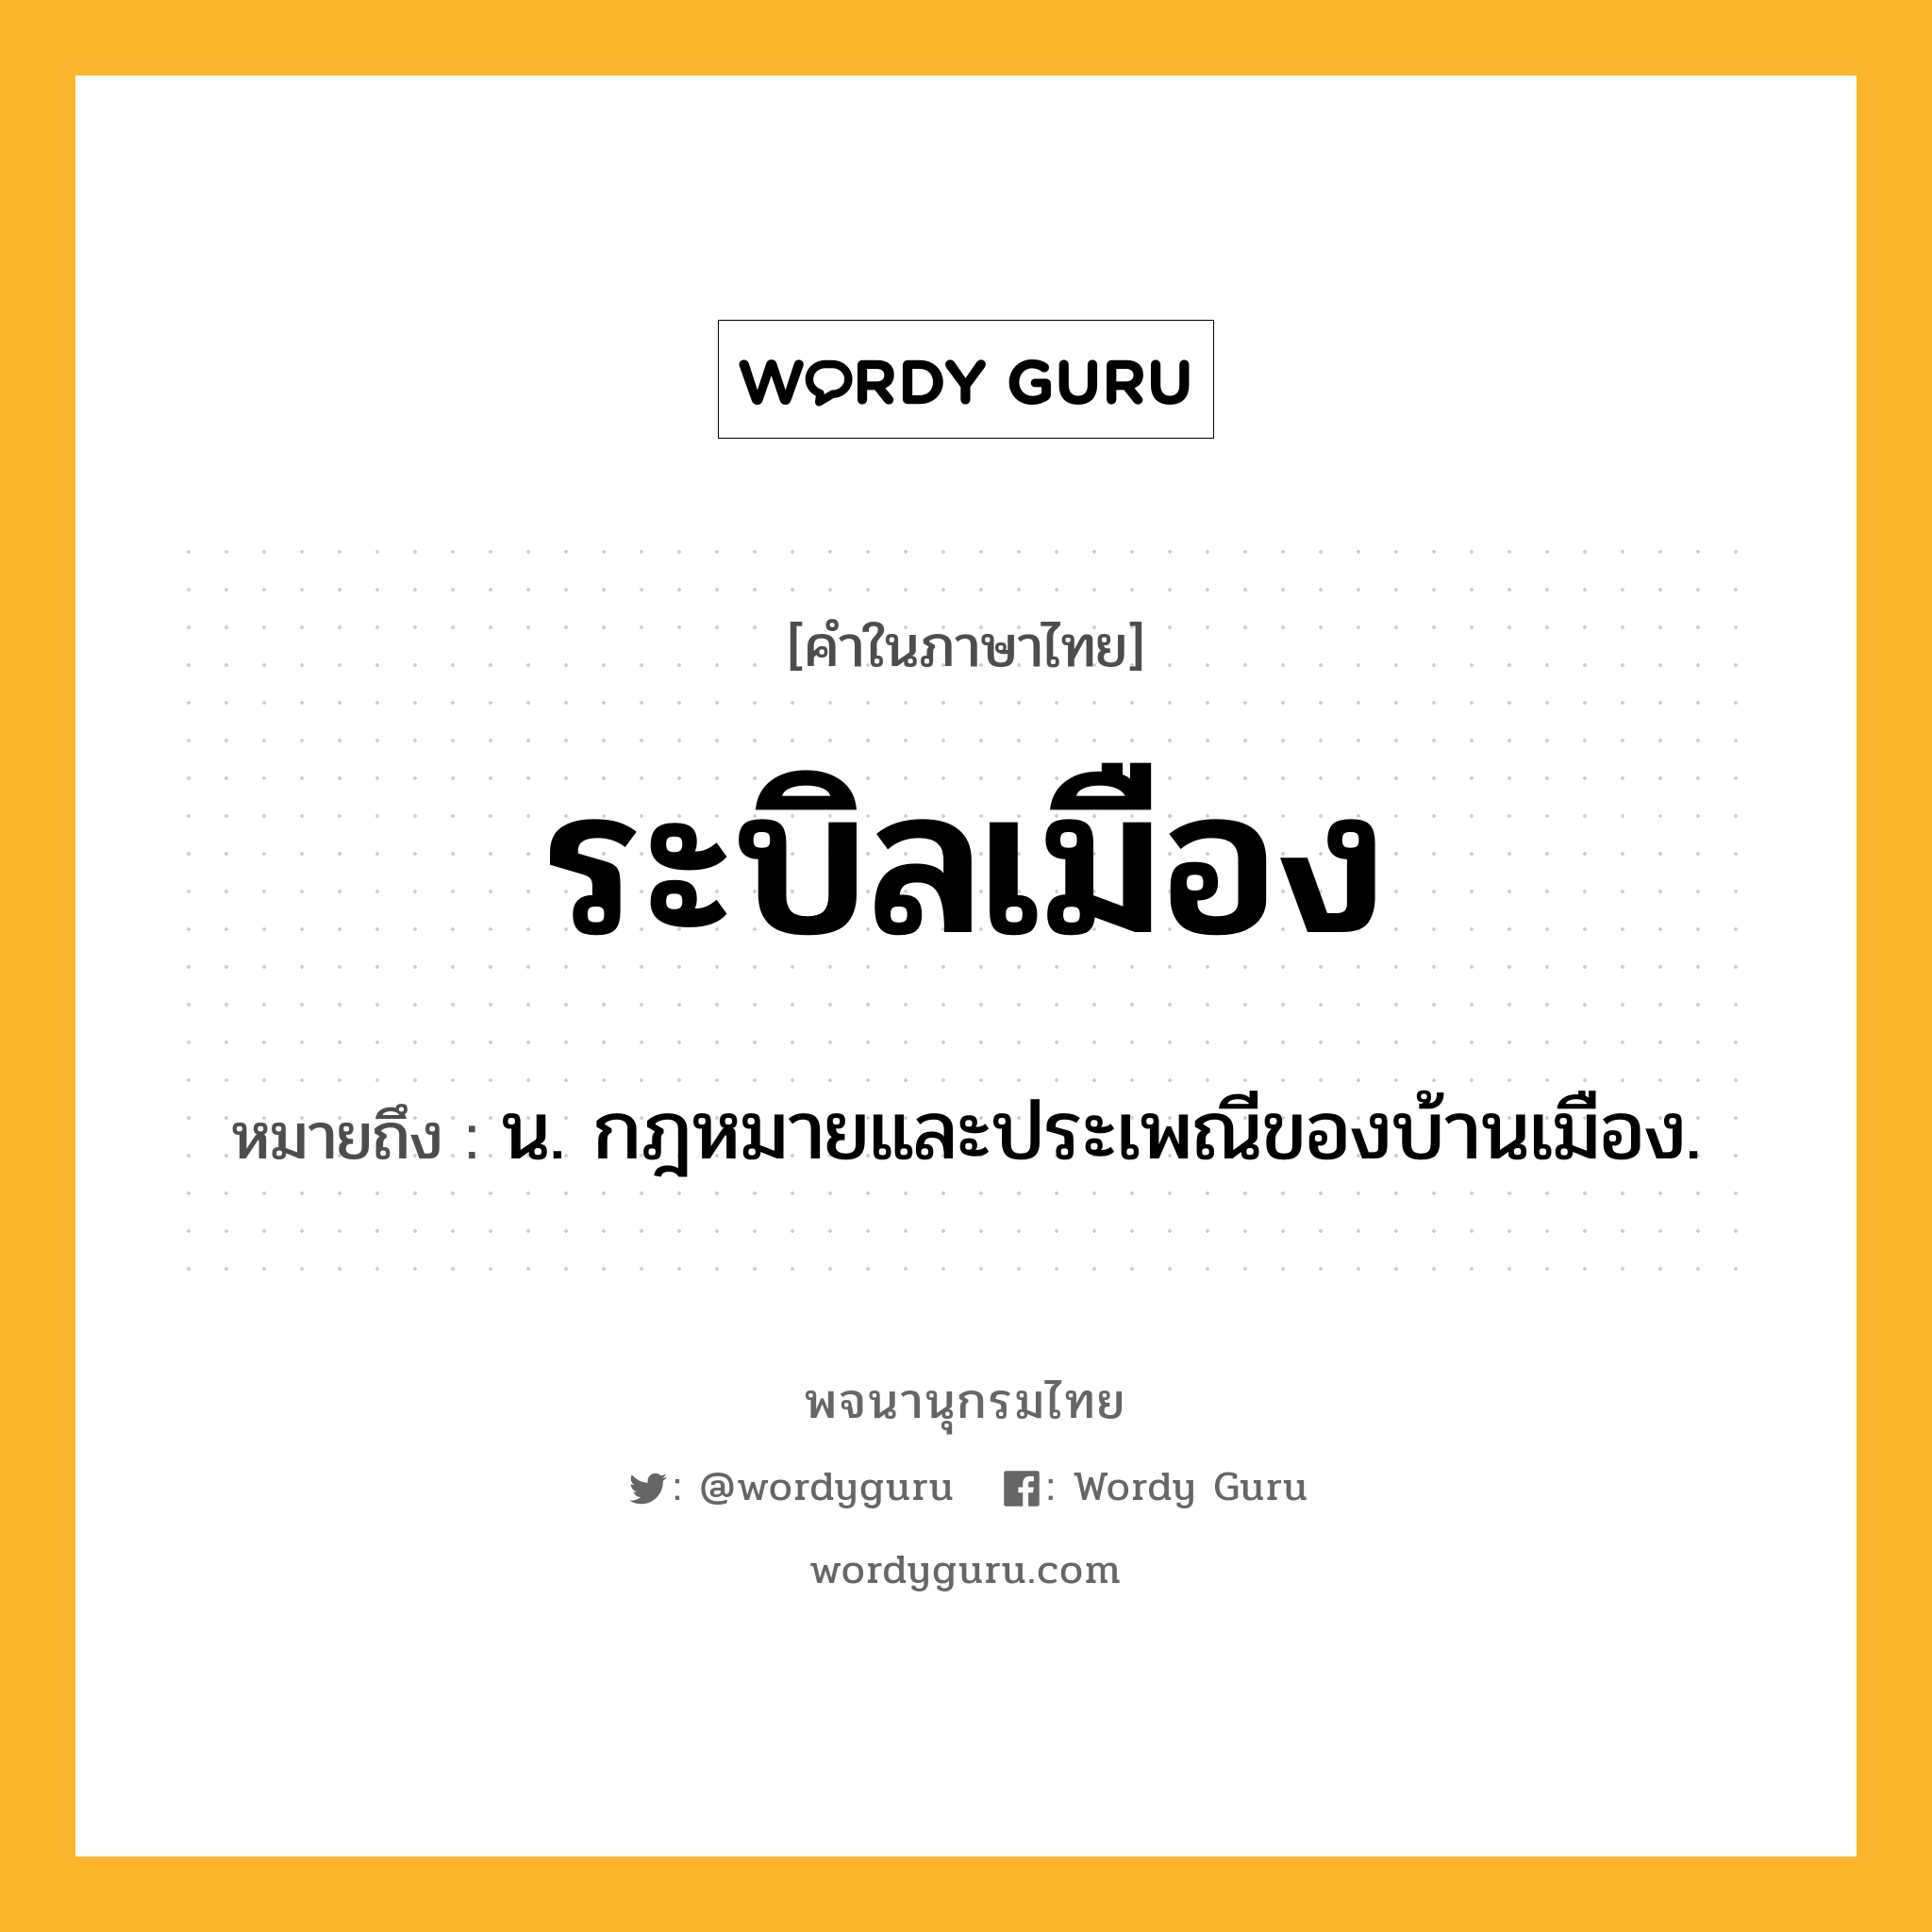 ระบิลเมือง ความหมาย หมายถึงอะไร?, คำในภาษาไทย ระบิลเมือง หมายถึง น. กฎหมายและประเพณีของบ้านเมือง.